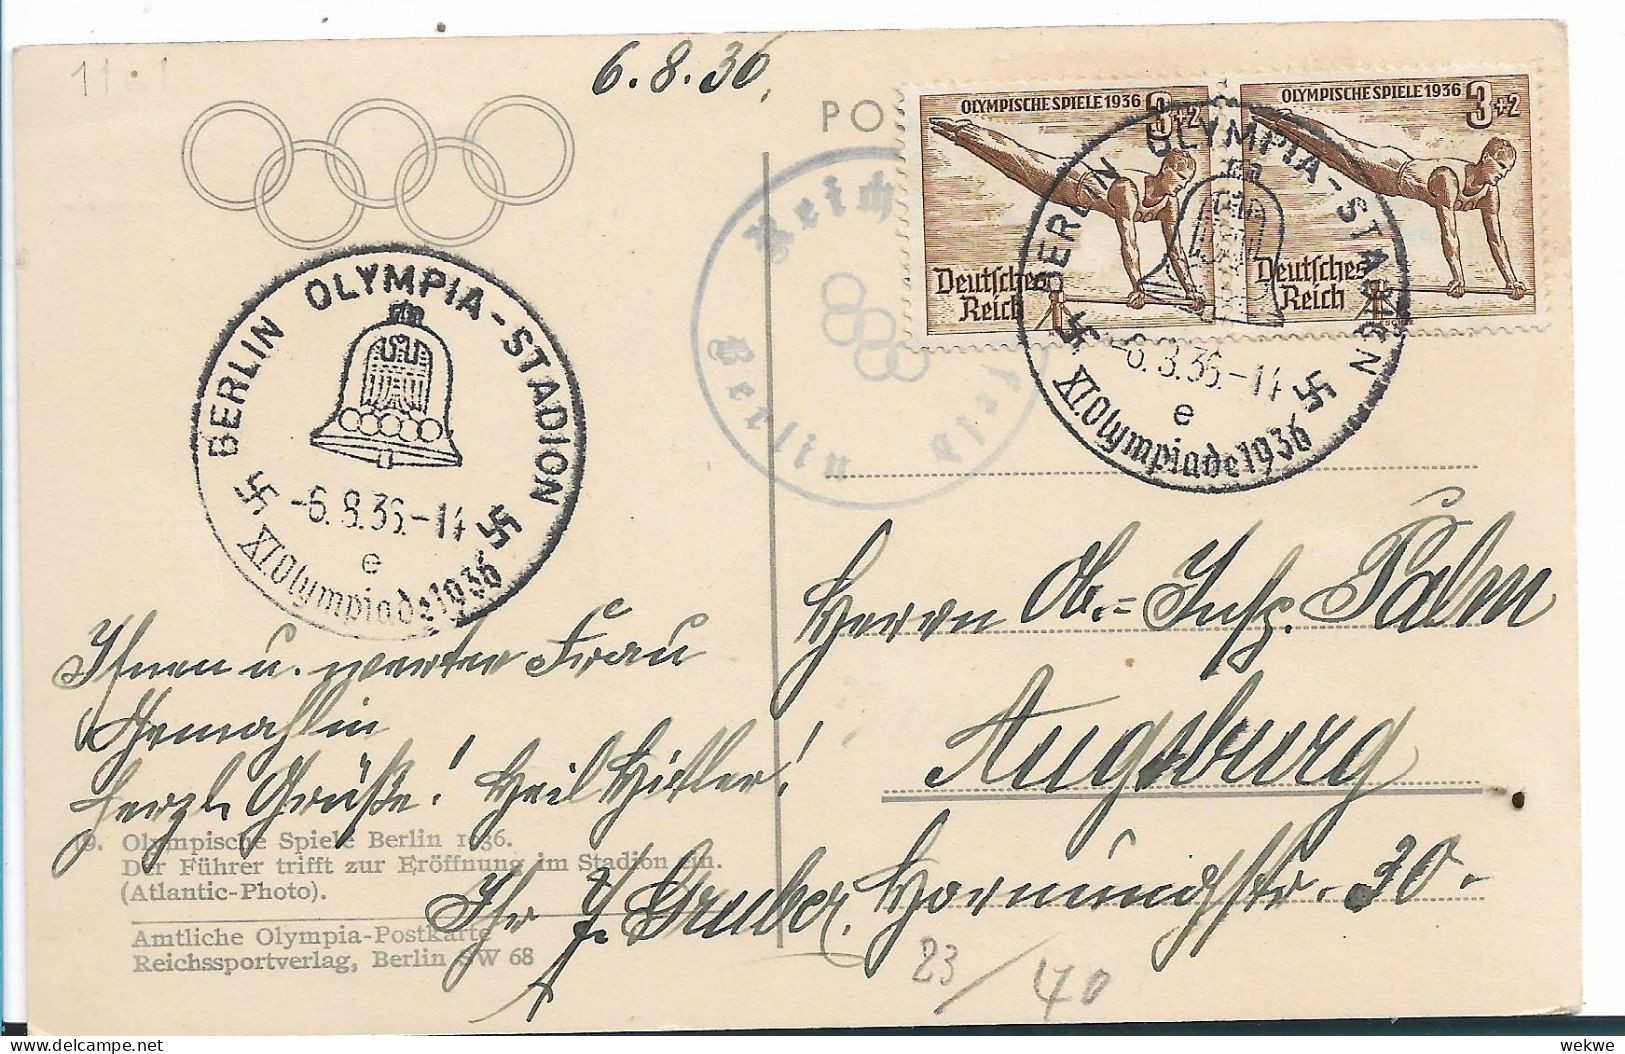 OY205 / OLYMPIADE 1936 - Amtliche Postkarte Zur Eröffnung Der Olympischen Spiele, 6.8.36 - Sommer 1936: Berlin